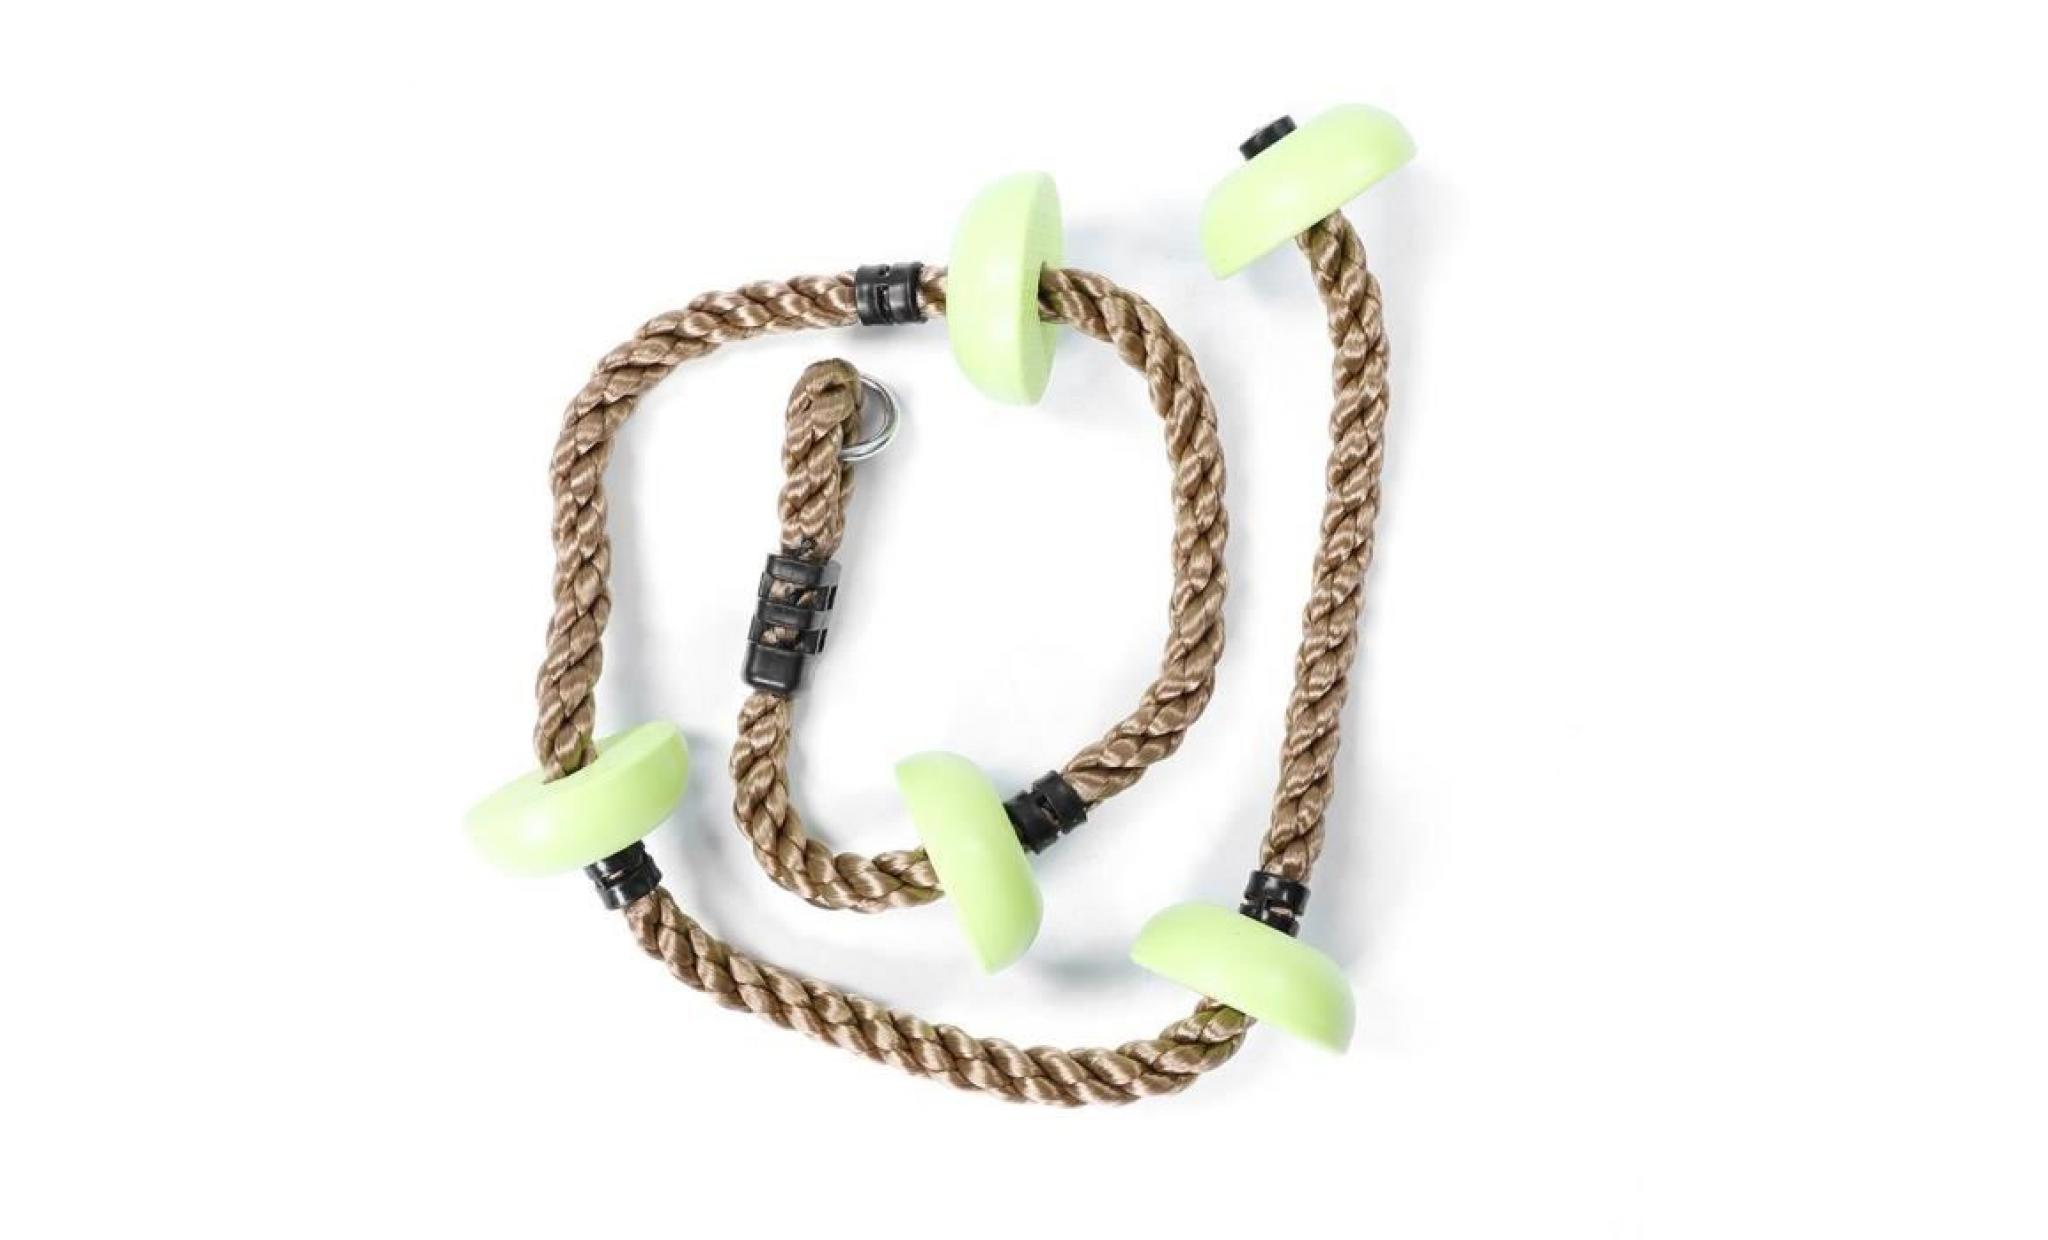 corde d'escalade à disque pour enfants jouet d'équipement de terrain de jeu (vert)   rac pas cher